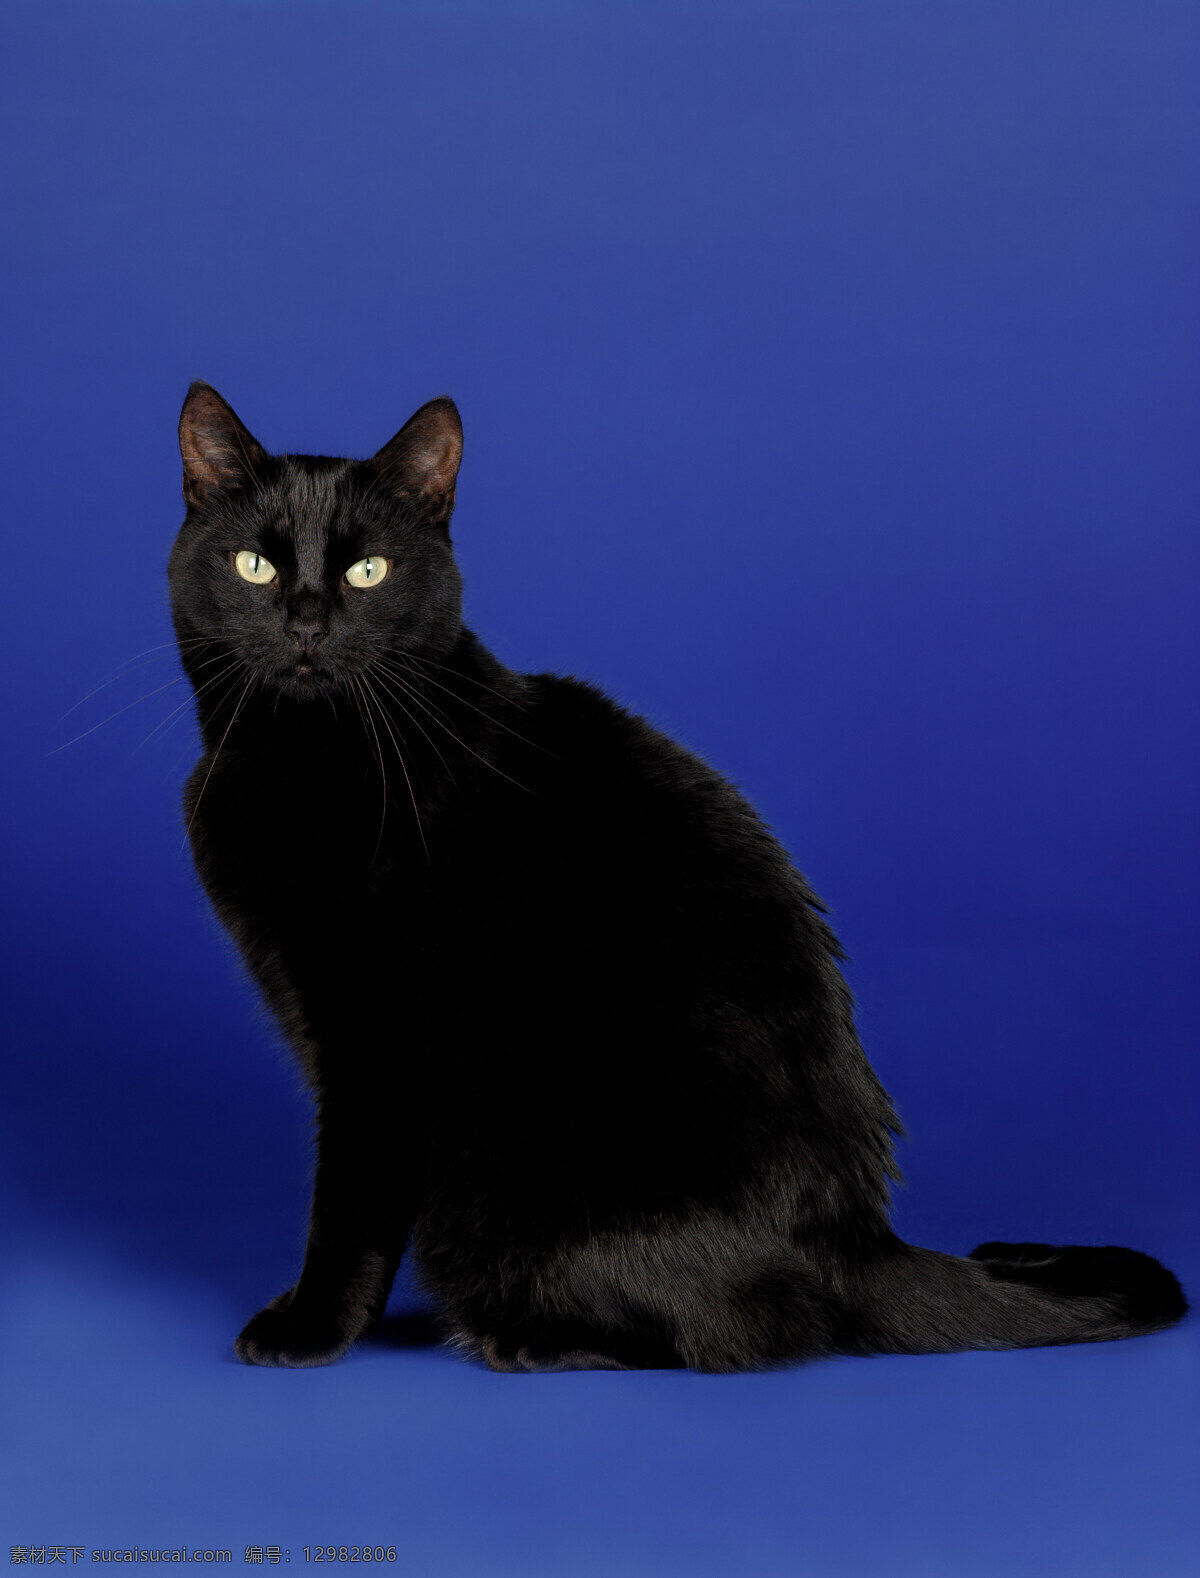 可爱小黑猫 小猫 可爱 猫咪 萌 黑猫 宠物猫 动物世界 陆地动物 生物世界 黑色